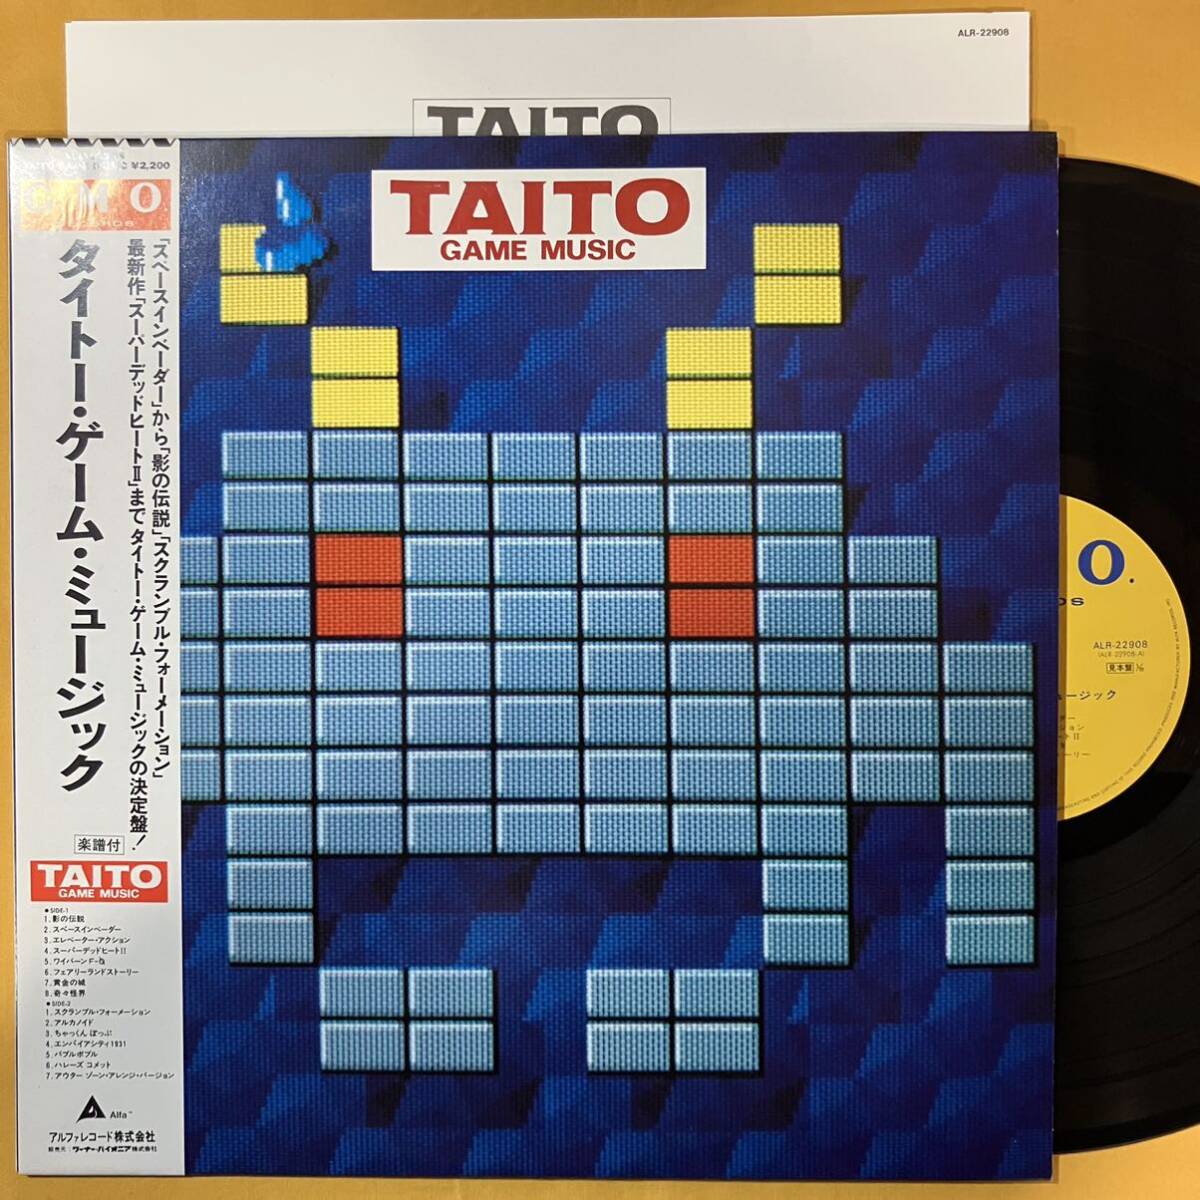 美盤 見本盤 タイトー・ゲーム・ミュージック Taito Game Music 楽譜付き ALR-22908 スペースインベーダー LP レコード アナログ盤の画像1